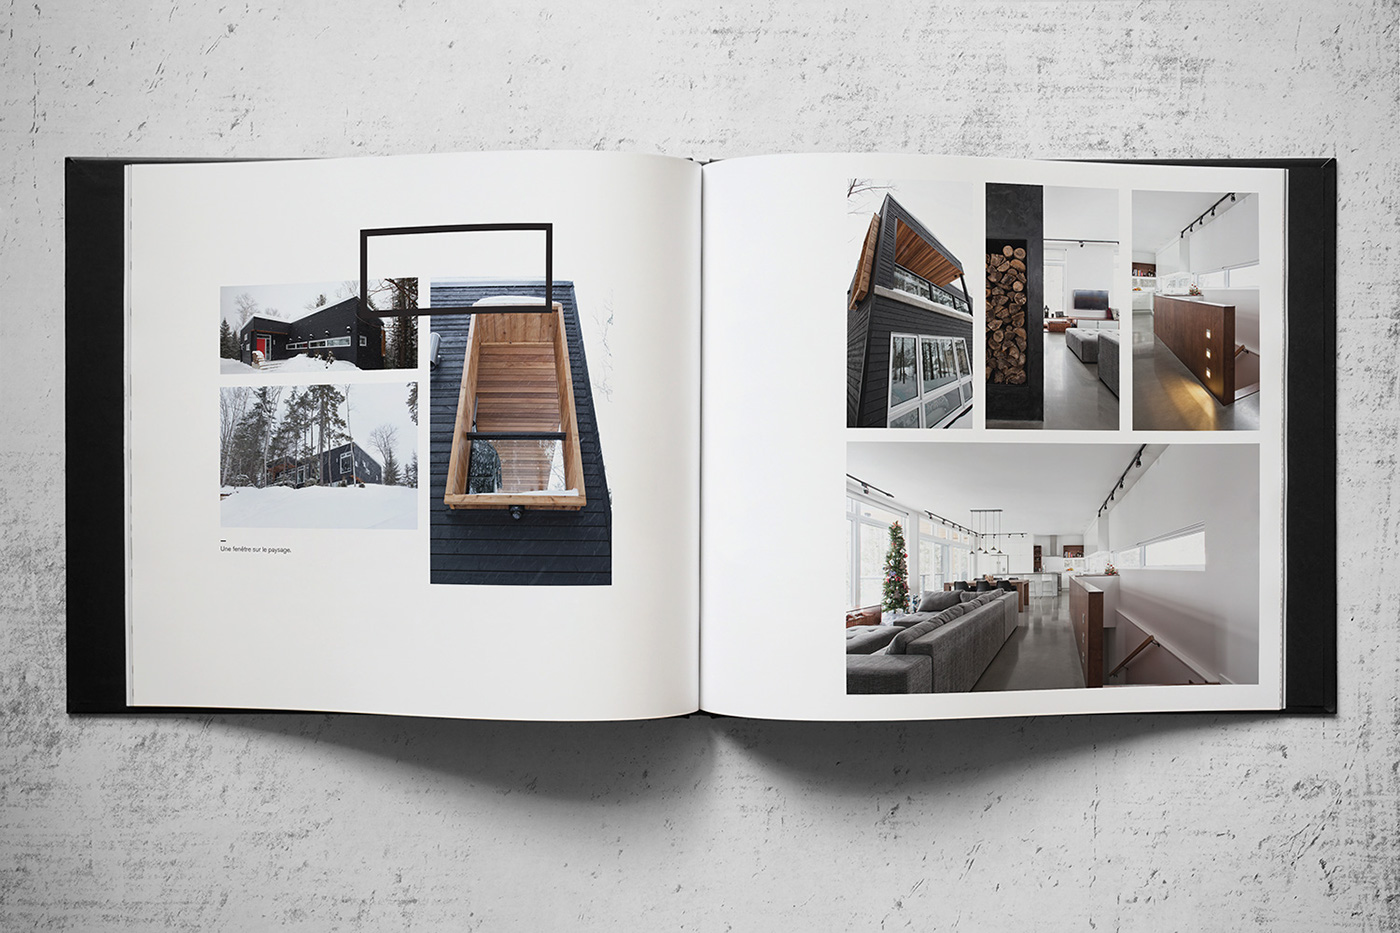 book coffee table modular grid DKA modern elegant art editorial clean system architect